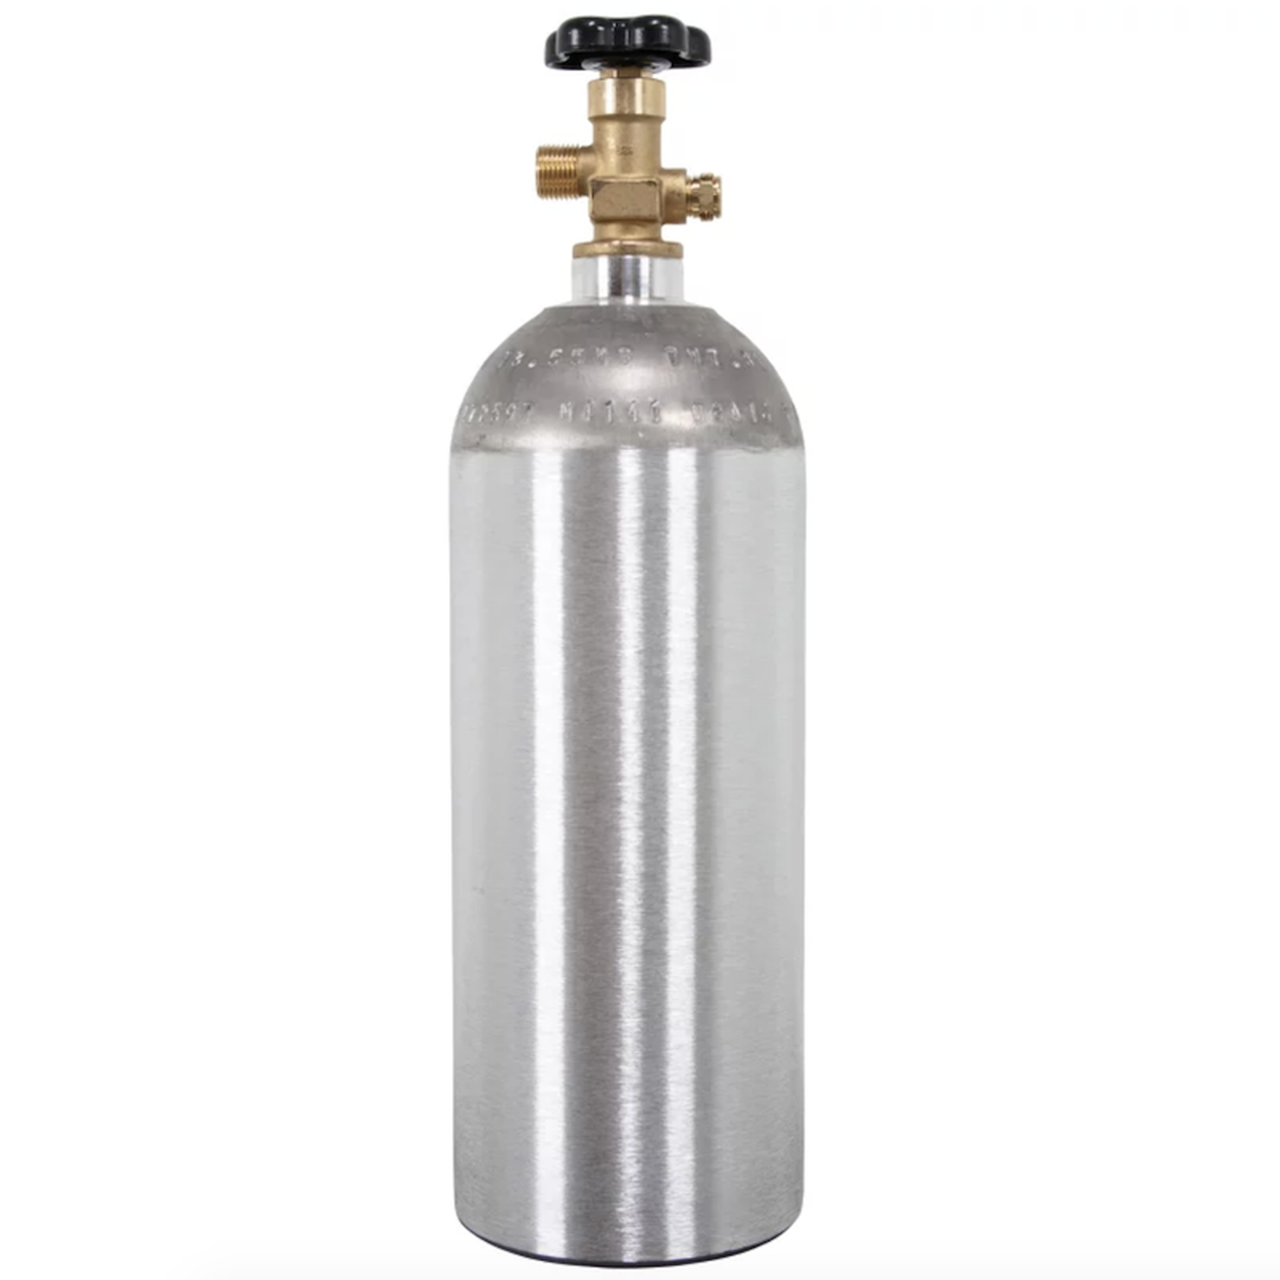 Aluminum 5 lb. CO2 Cylinder